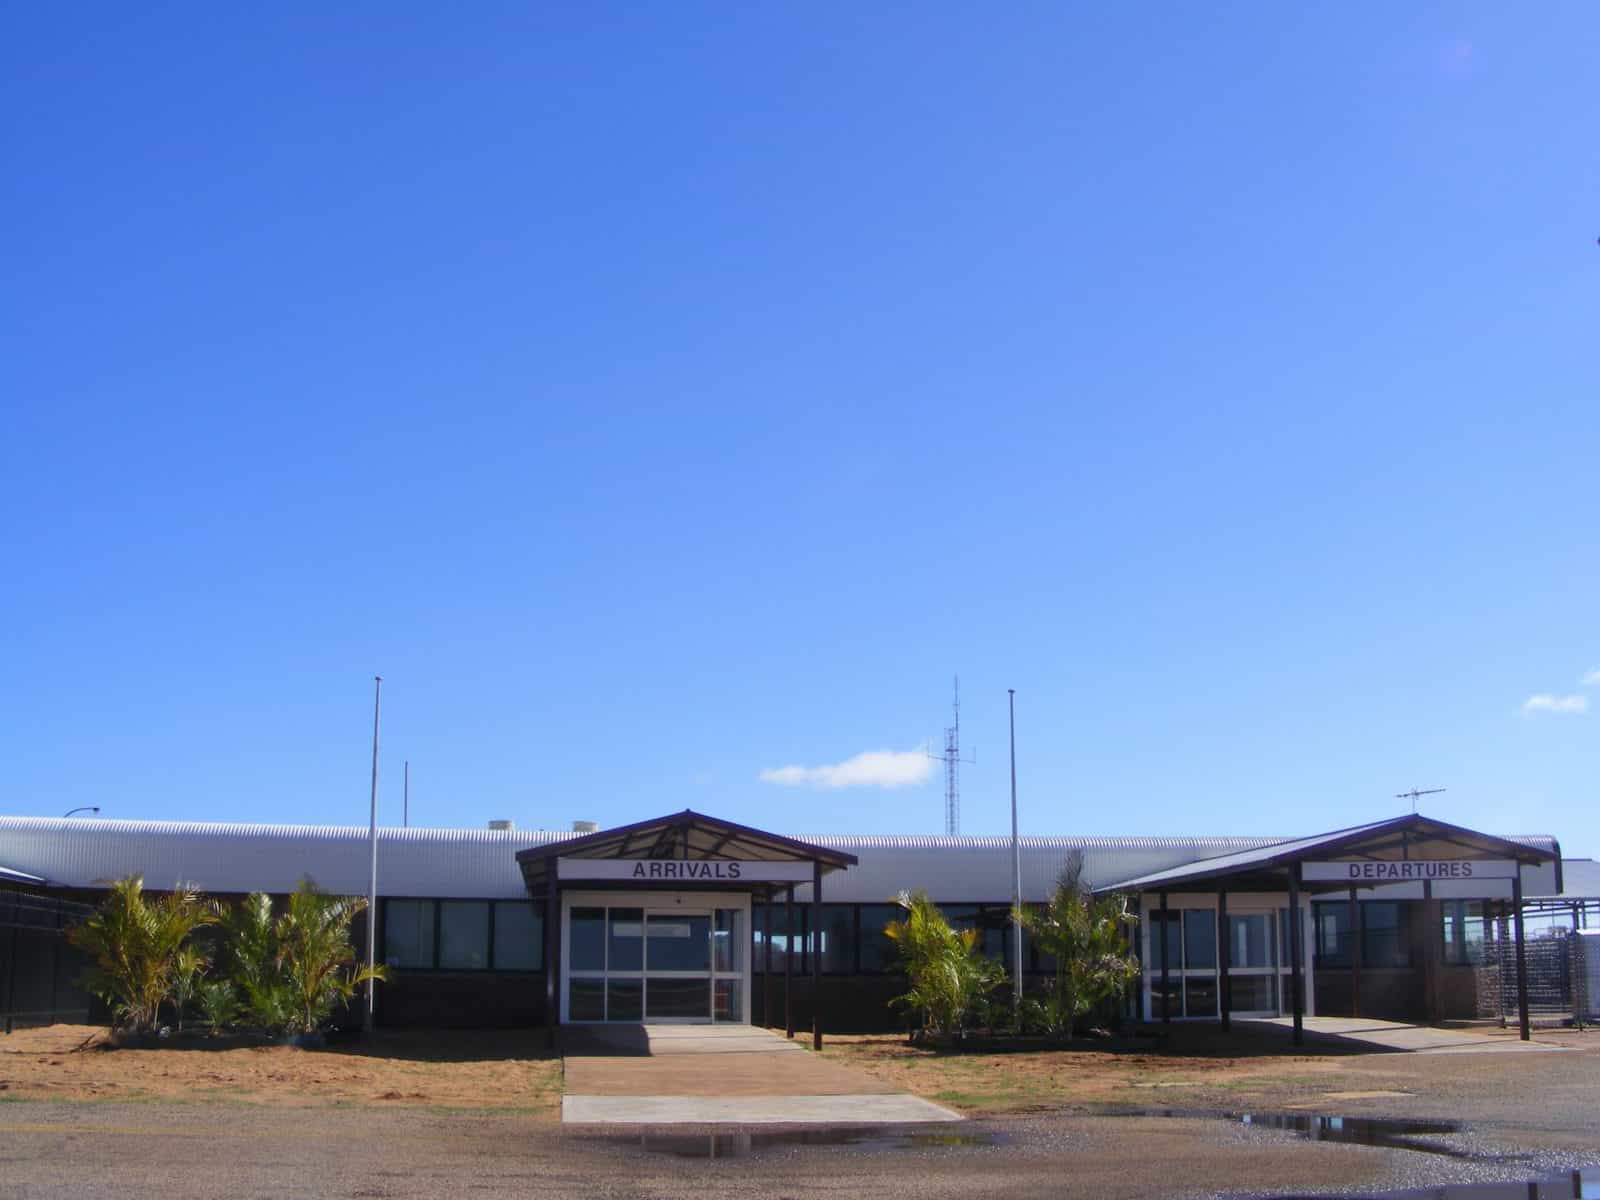 Carnarvon Airport, Carnarvon, Western Australia